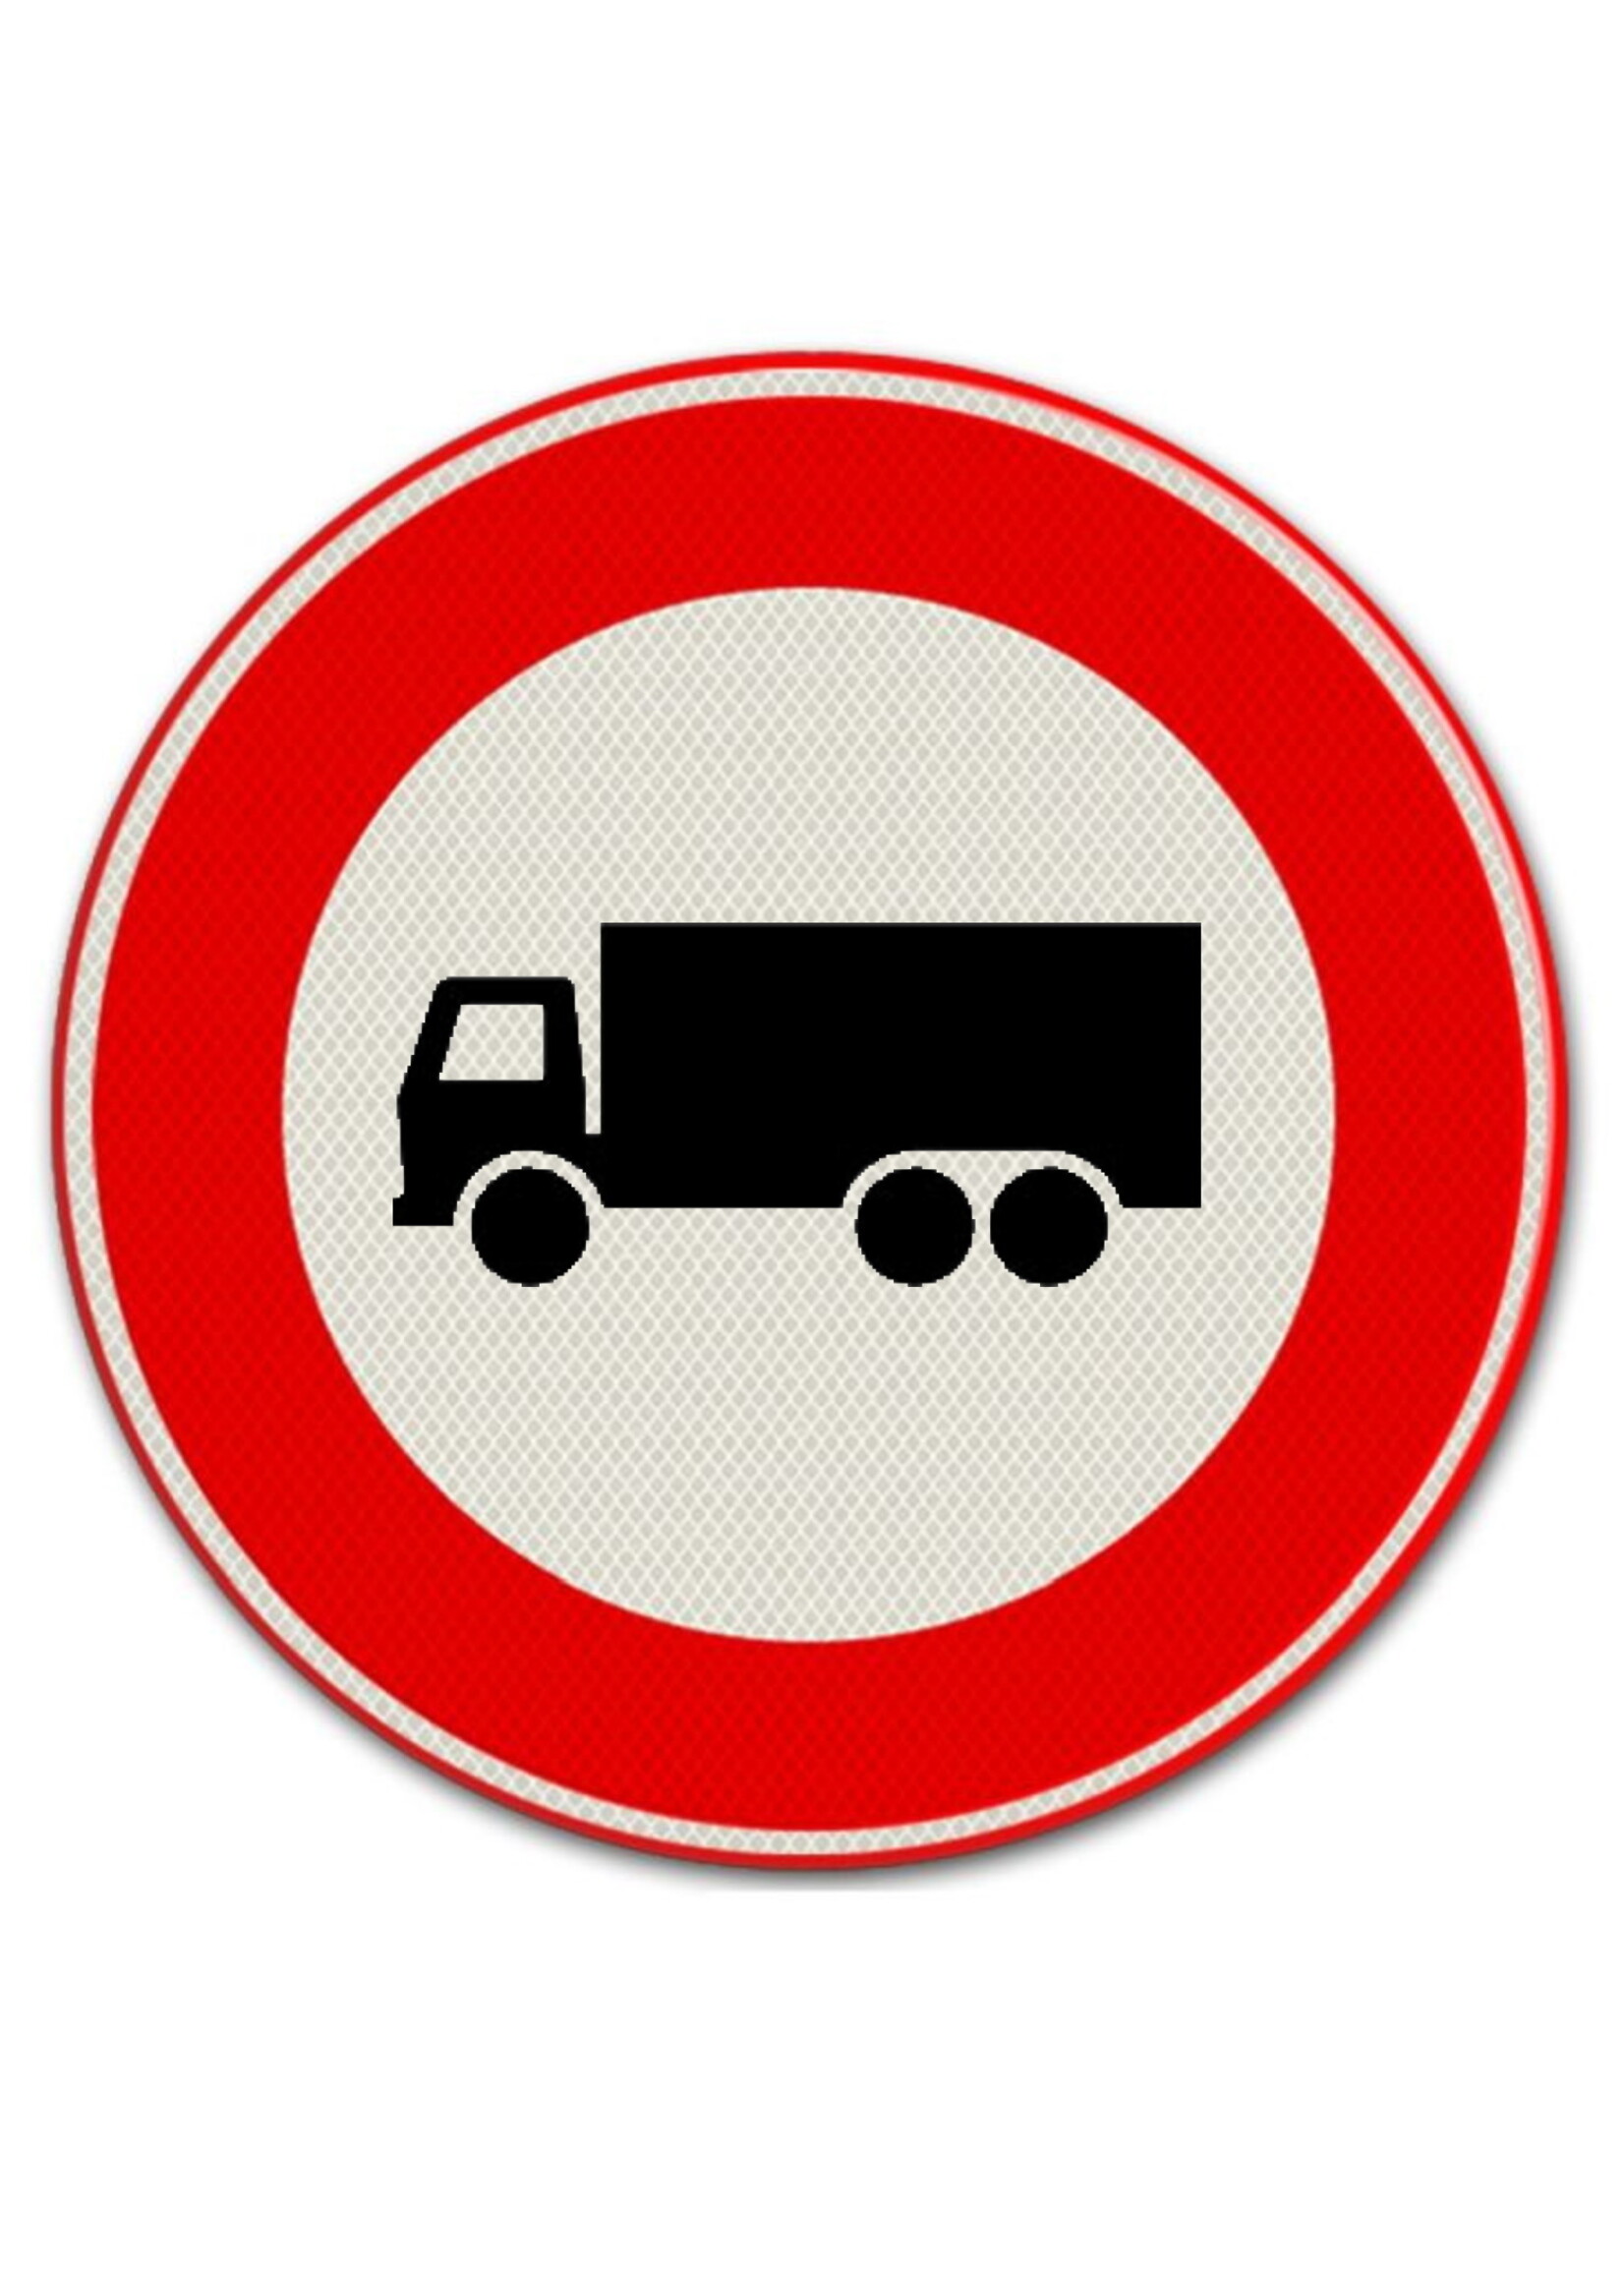 RI-TRAFFIC Verkehrsschild: Verbot für Kraftfahrzeuge / Durchfahrt Verboten für Lastkraftwagen - LKW